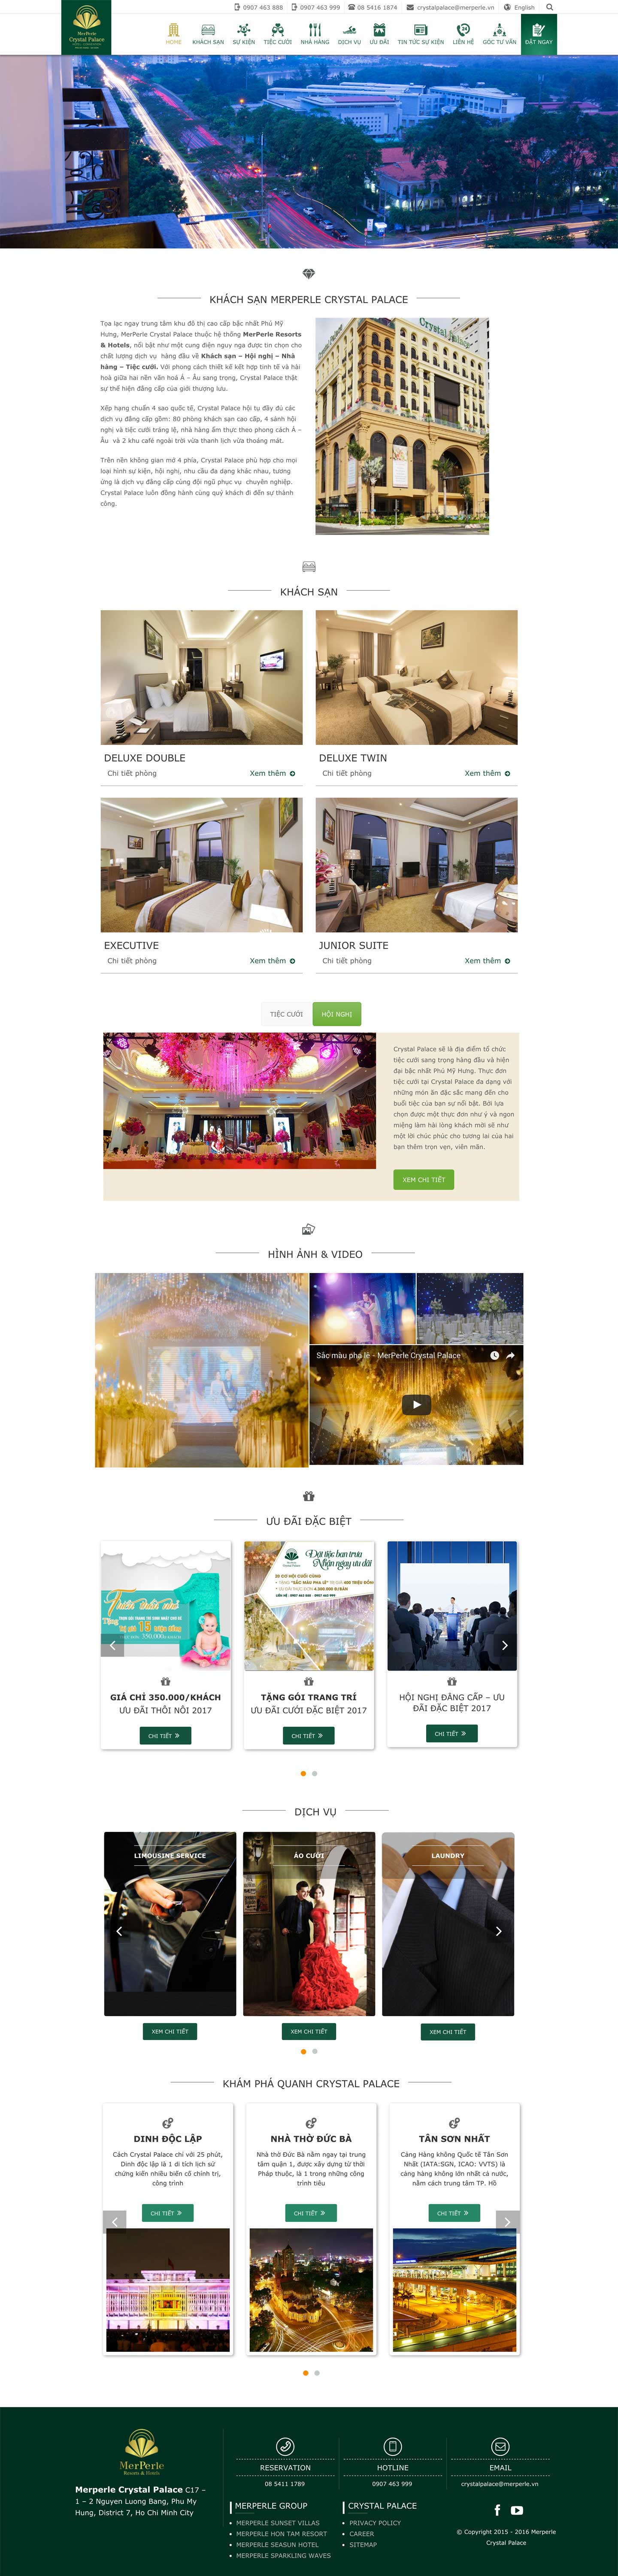 Thiết kế web trung tâm hội nghị nhà hàng tiệc cưới Crystal Palace trên ipad